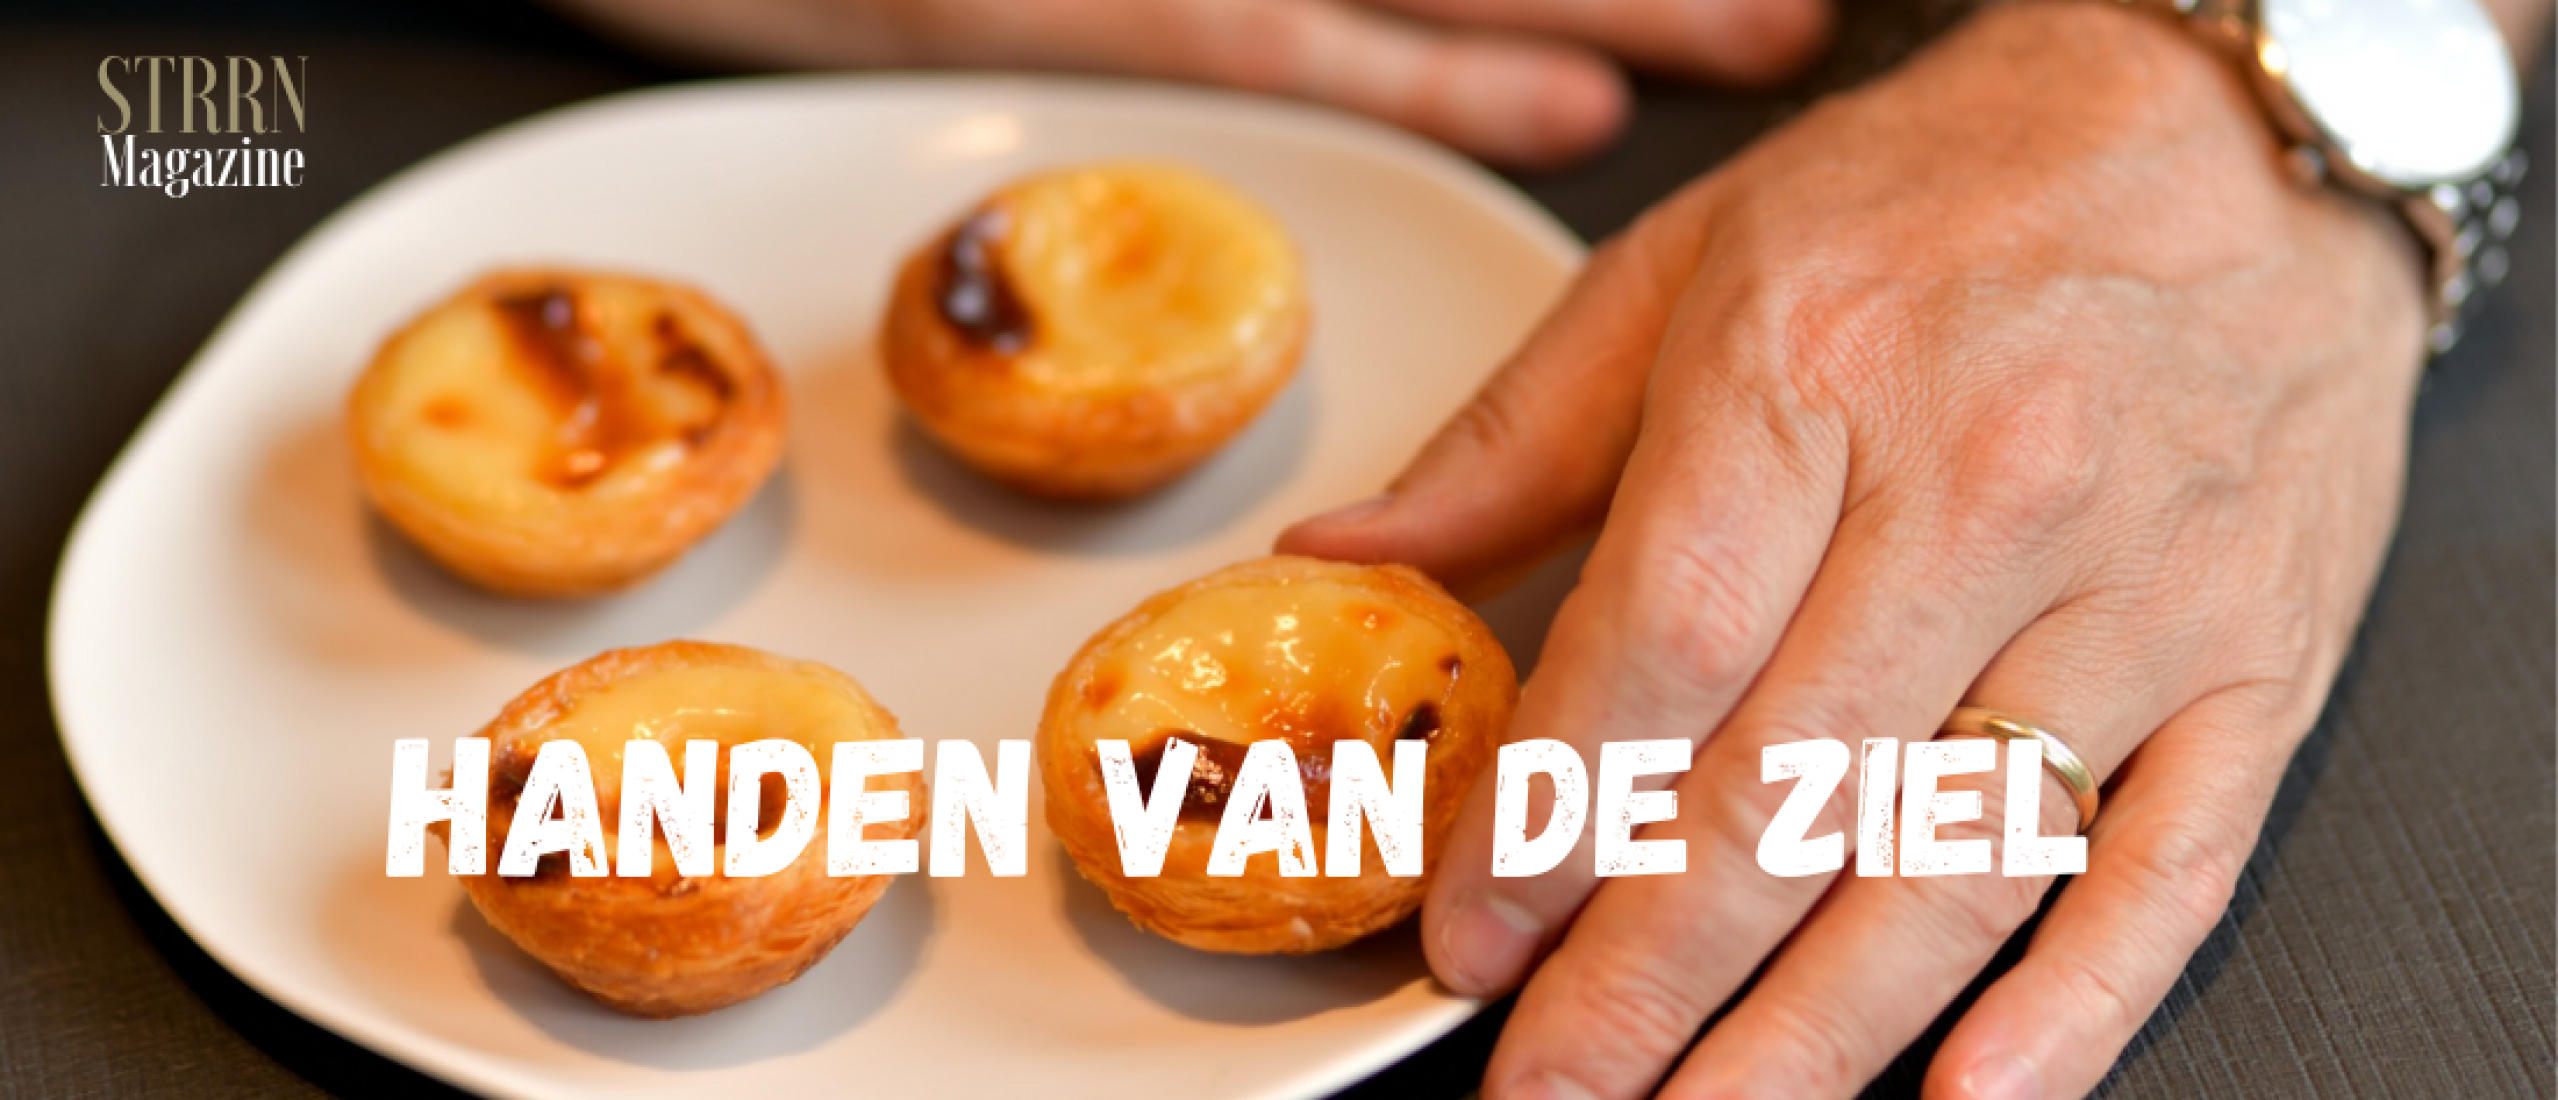 Handen van de ziel - met Michel van der Kroft restaurant ’t Nonnetje**, Harderwijk